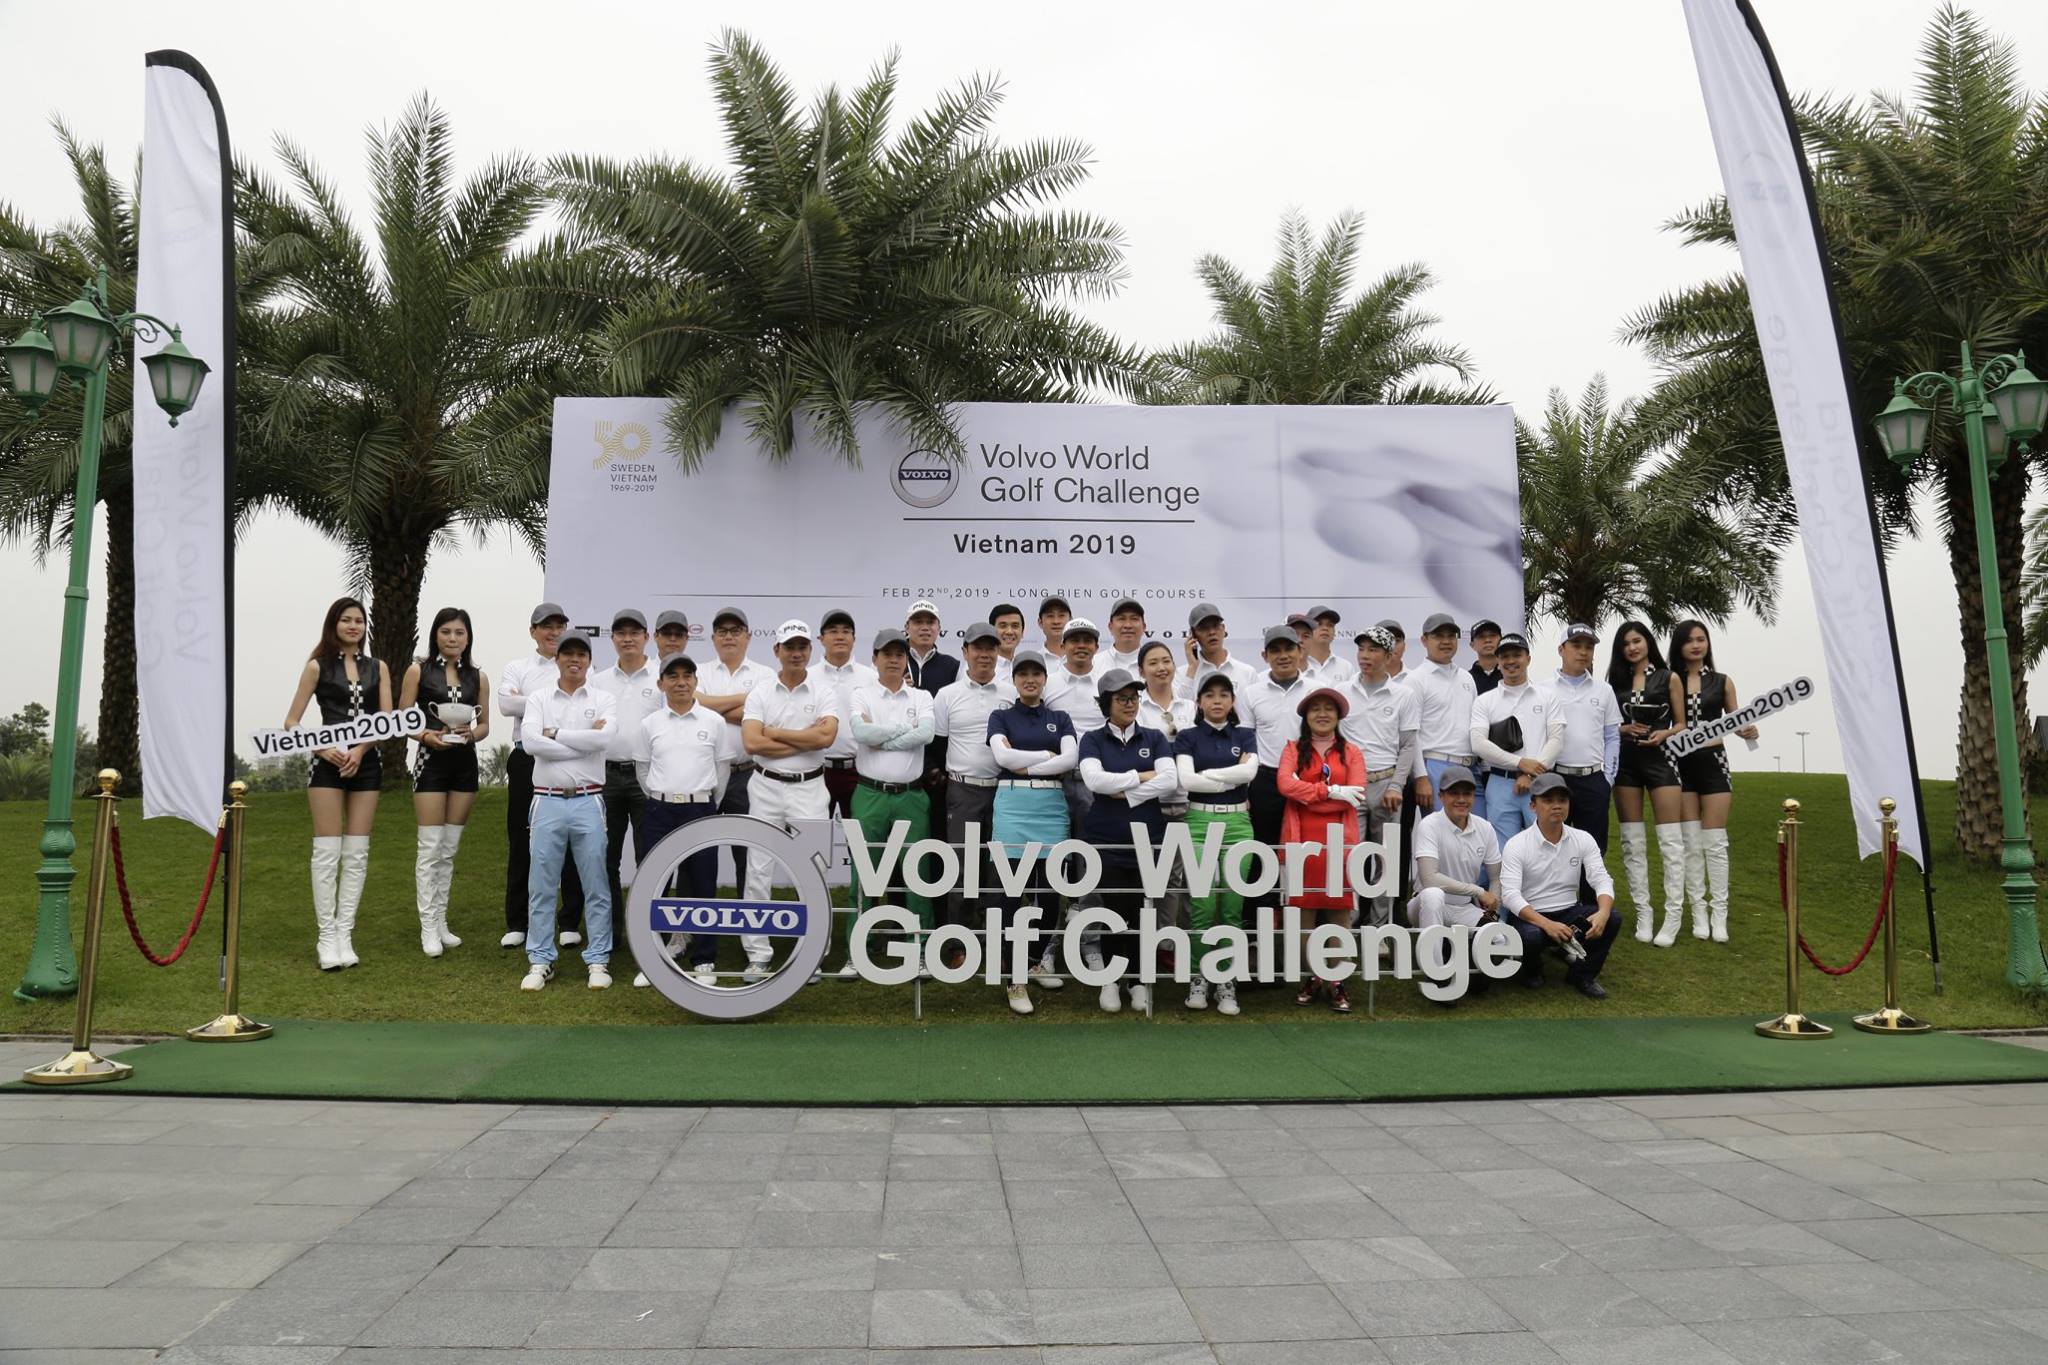 Volvo World Golf Challenge - Vietnam 2019